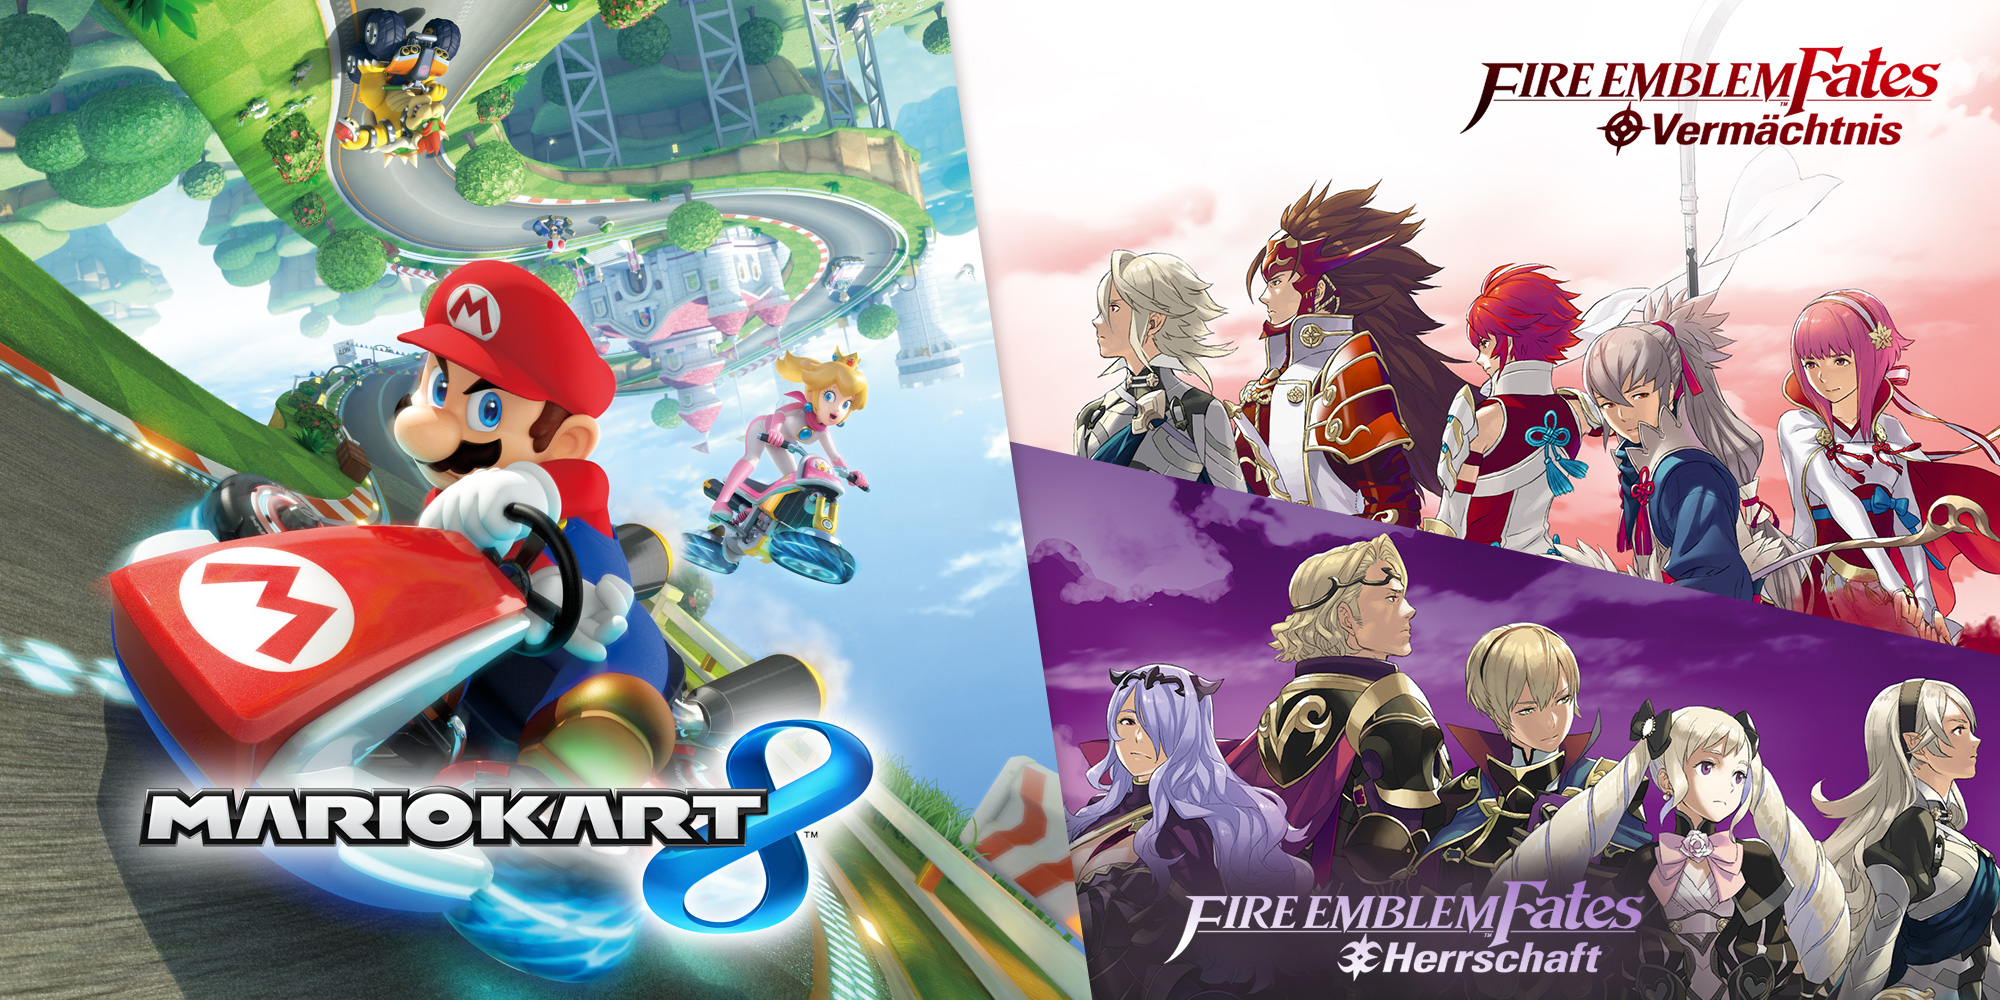 Angebote im Nintendo eShop: Zusatzinhalte für Mario Kart 8 und Fire Emblem Fates